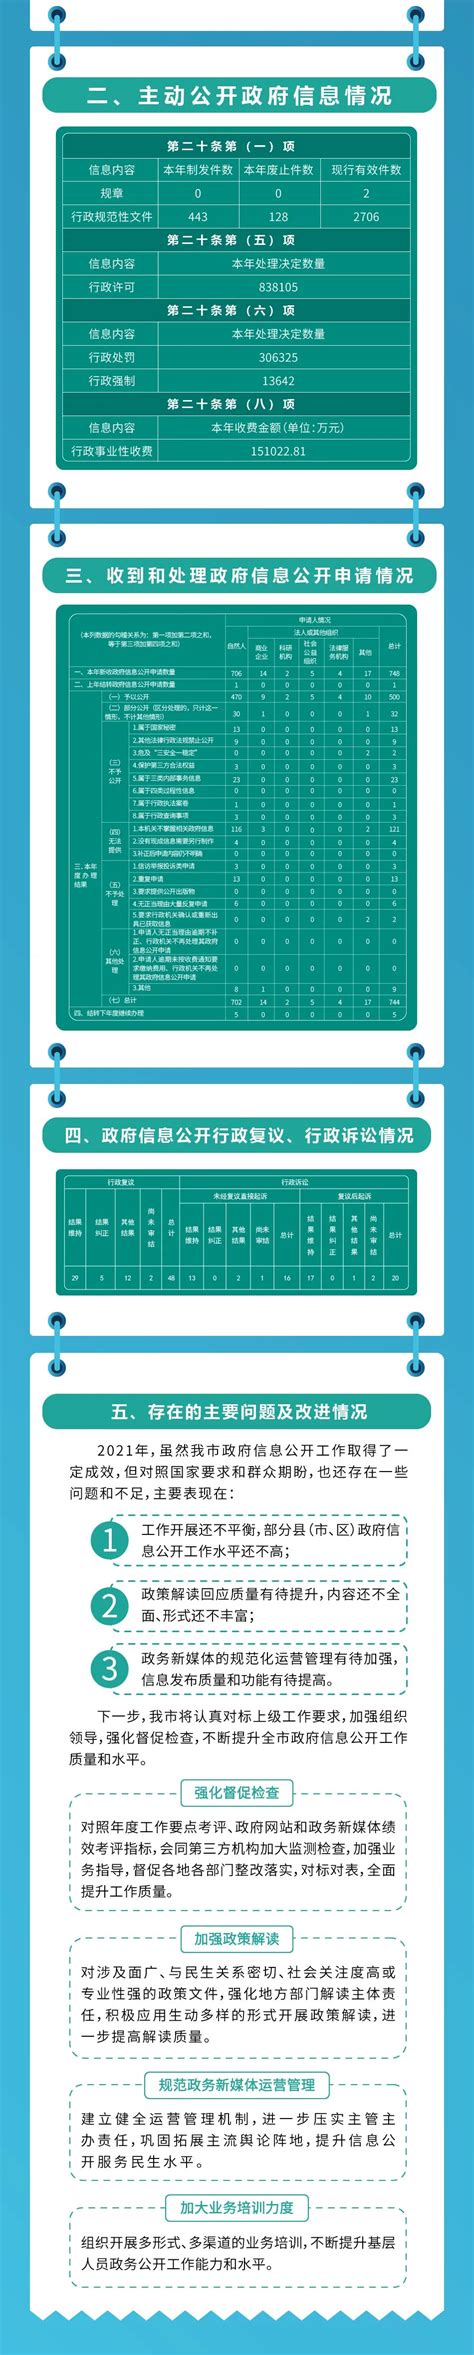 赣州市2021年政府信息公开工作年度报告（图文版） | 赣州市政府信息公开